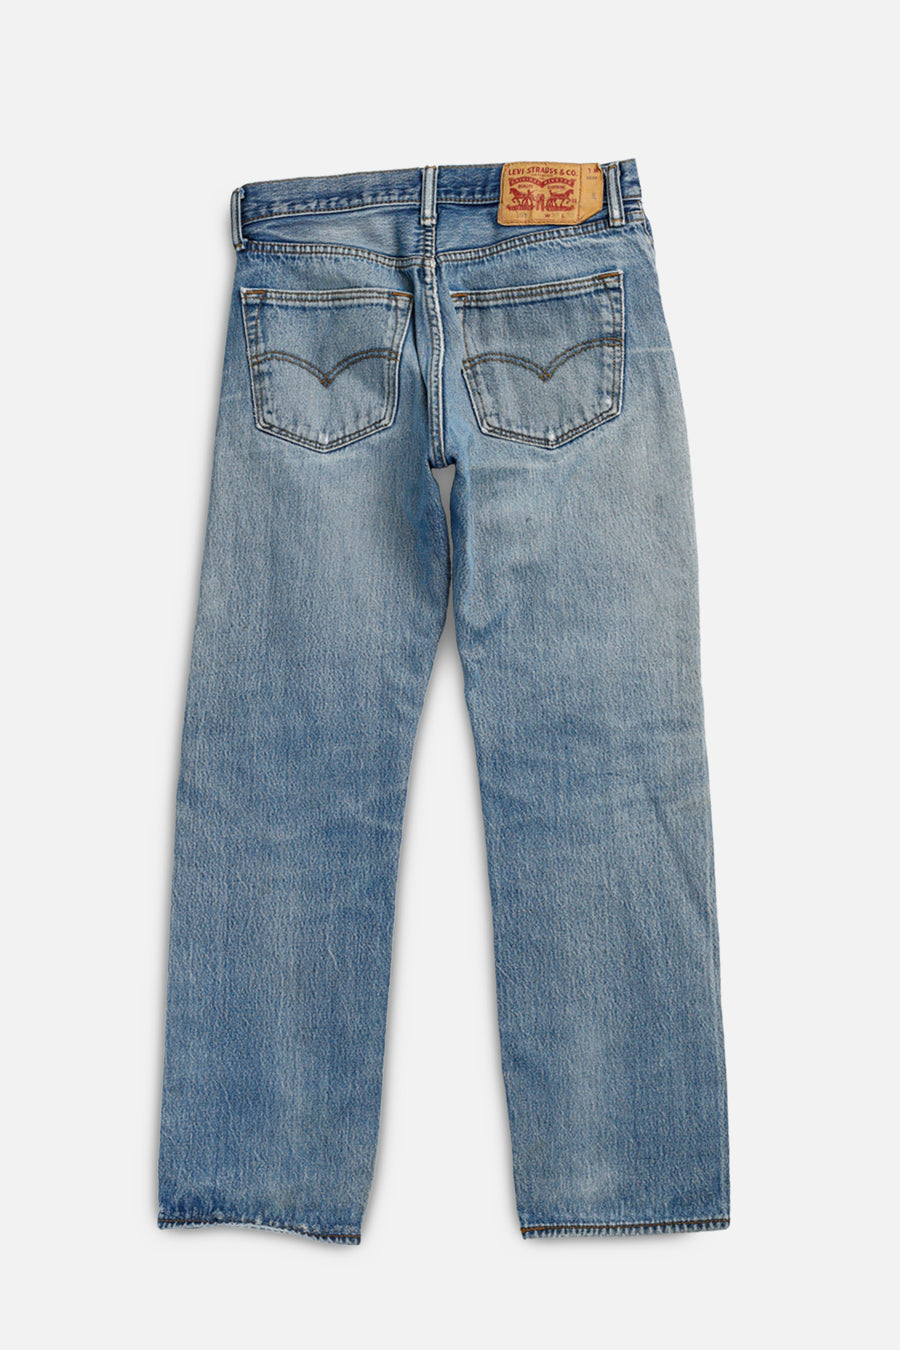 Vintage Levi's Denim Pants - W32 L33